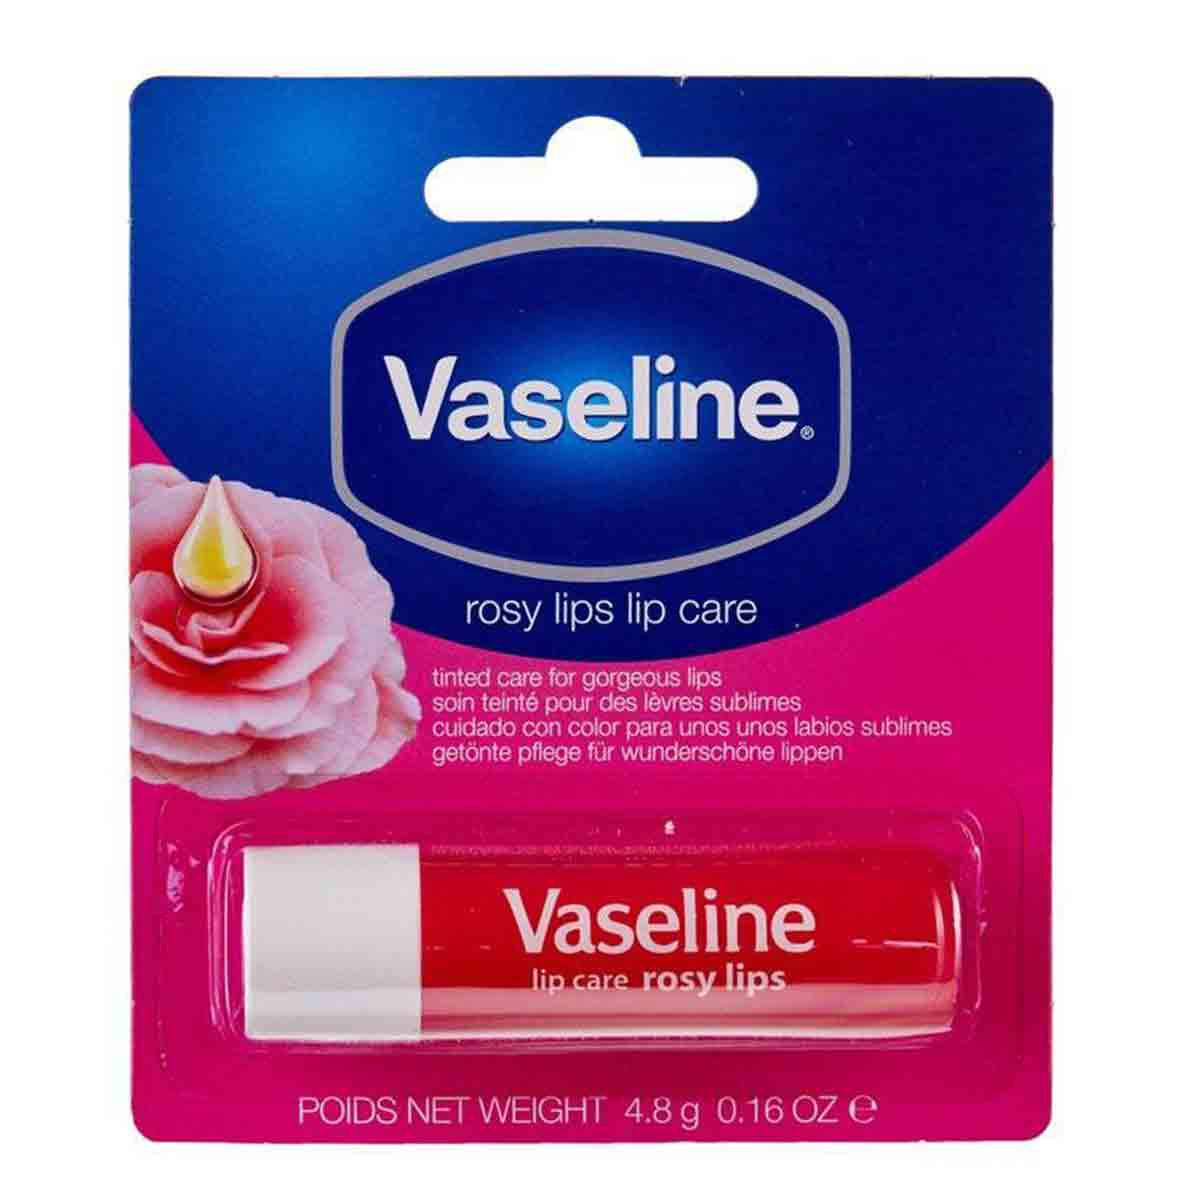  بالم لب وازلین vaseline مدل Rosy Lips وزن ۲۰ گرم